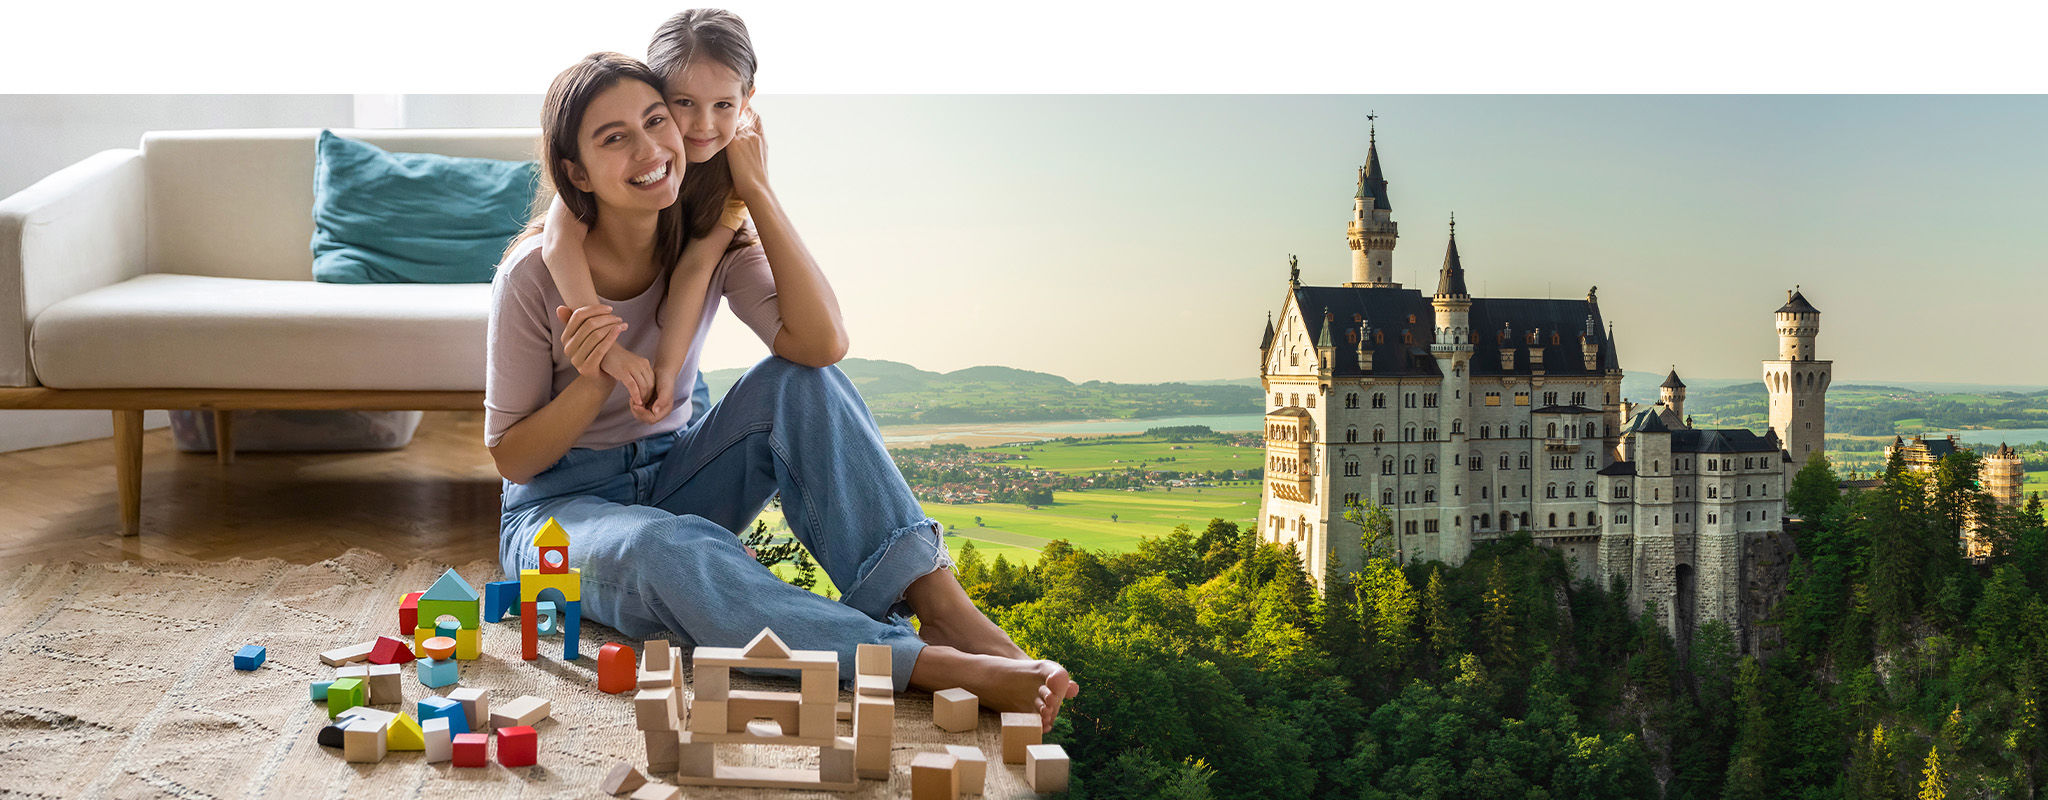 Mutter und Tochter bauen ein Schloss aus Bauklötzen, daneben Schloss Neuschwanstein